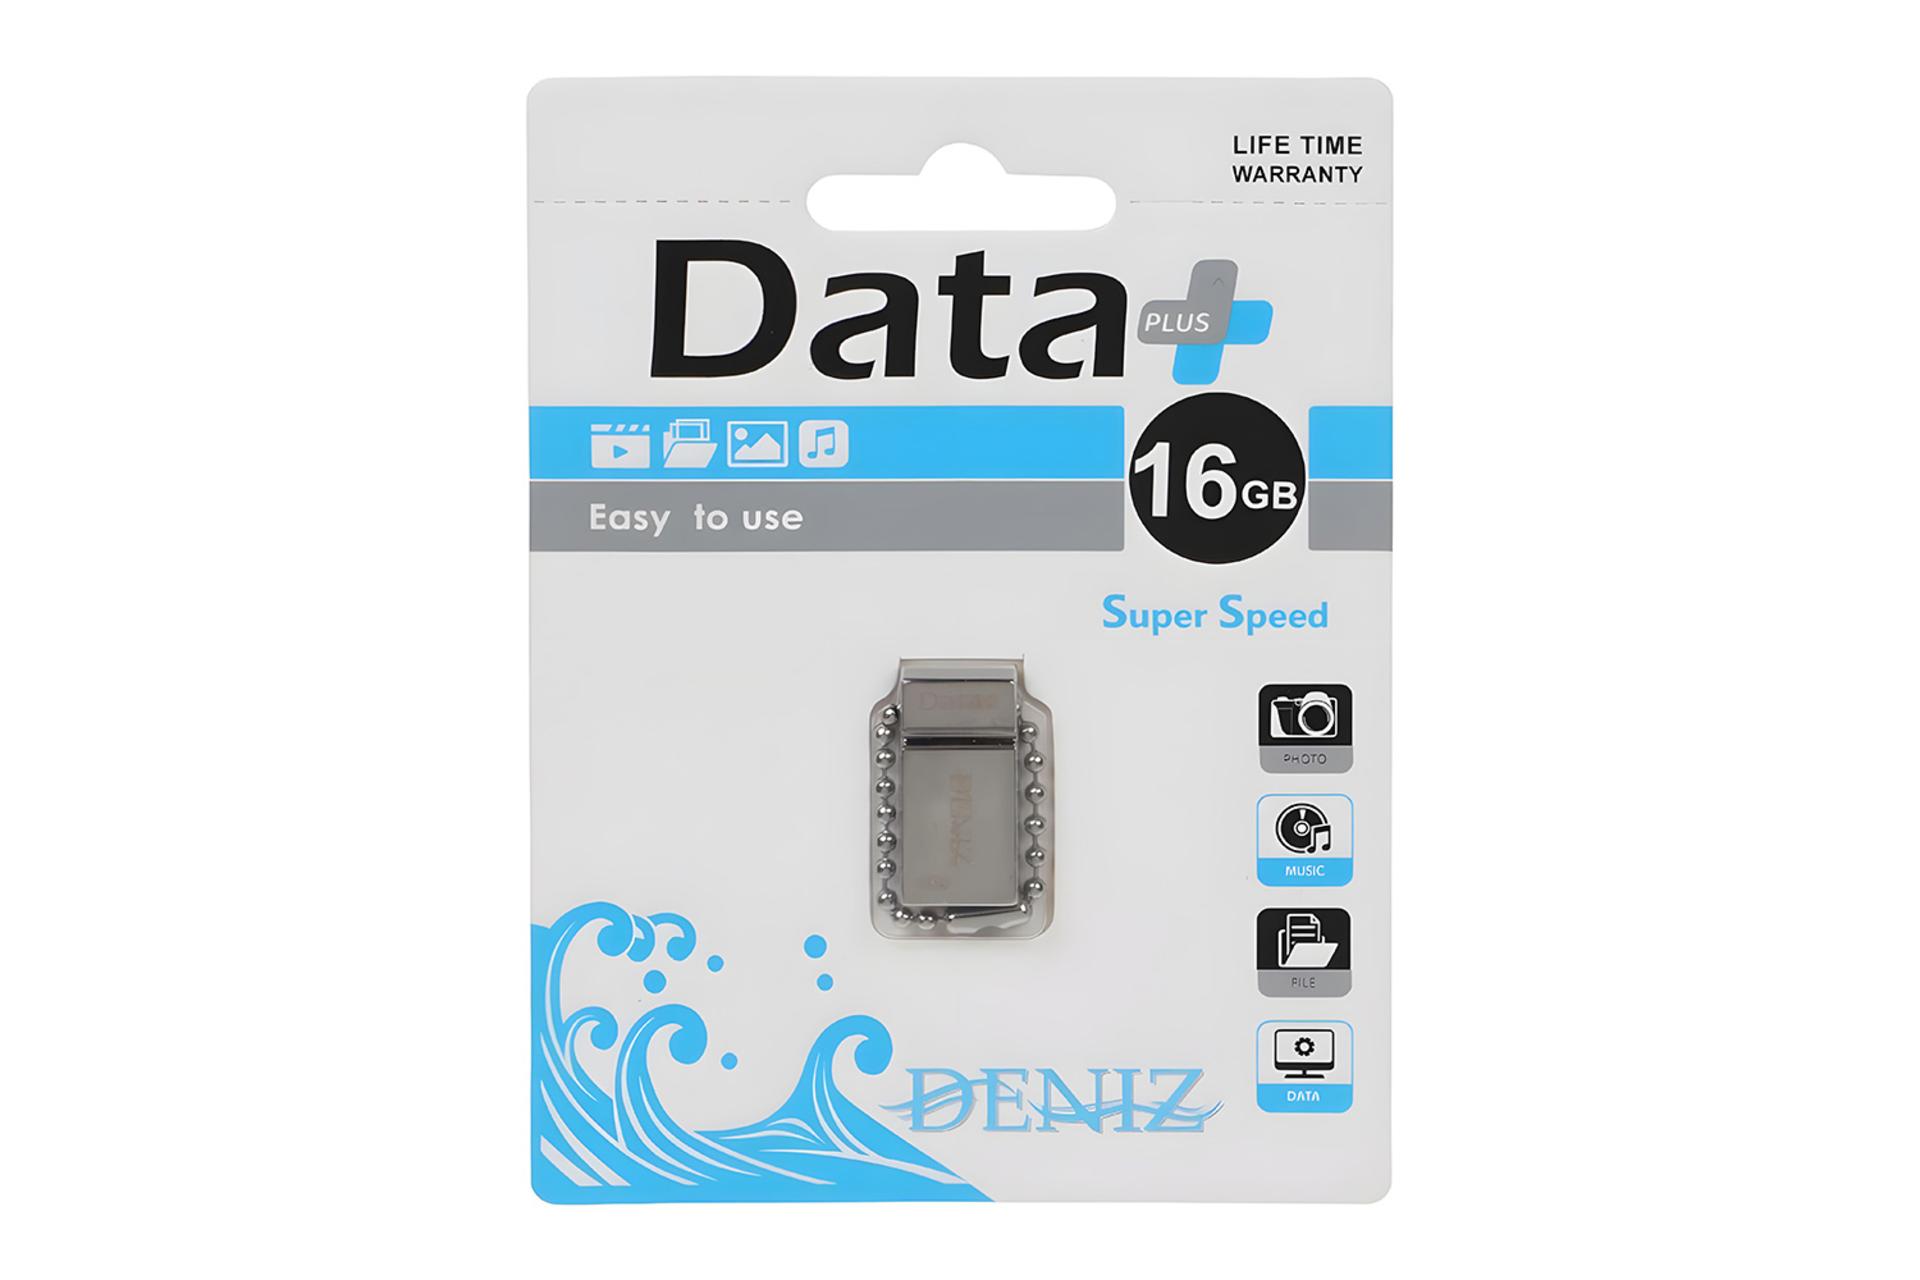 جعبه فلش مموری دیتاپلاس Data+ DENIZ 16GB USB 2.0